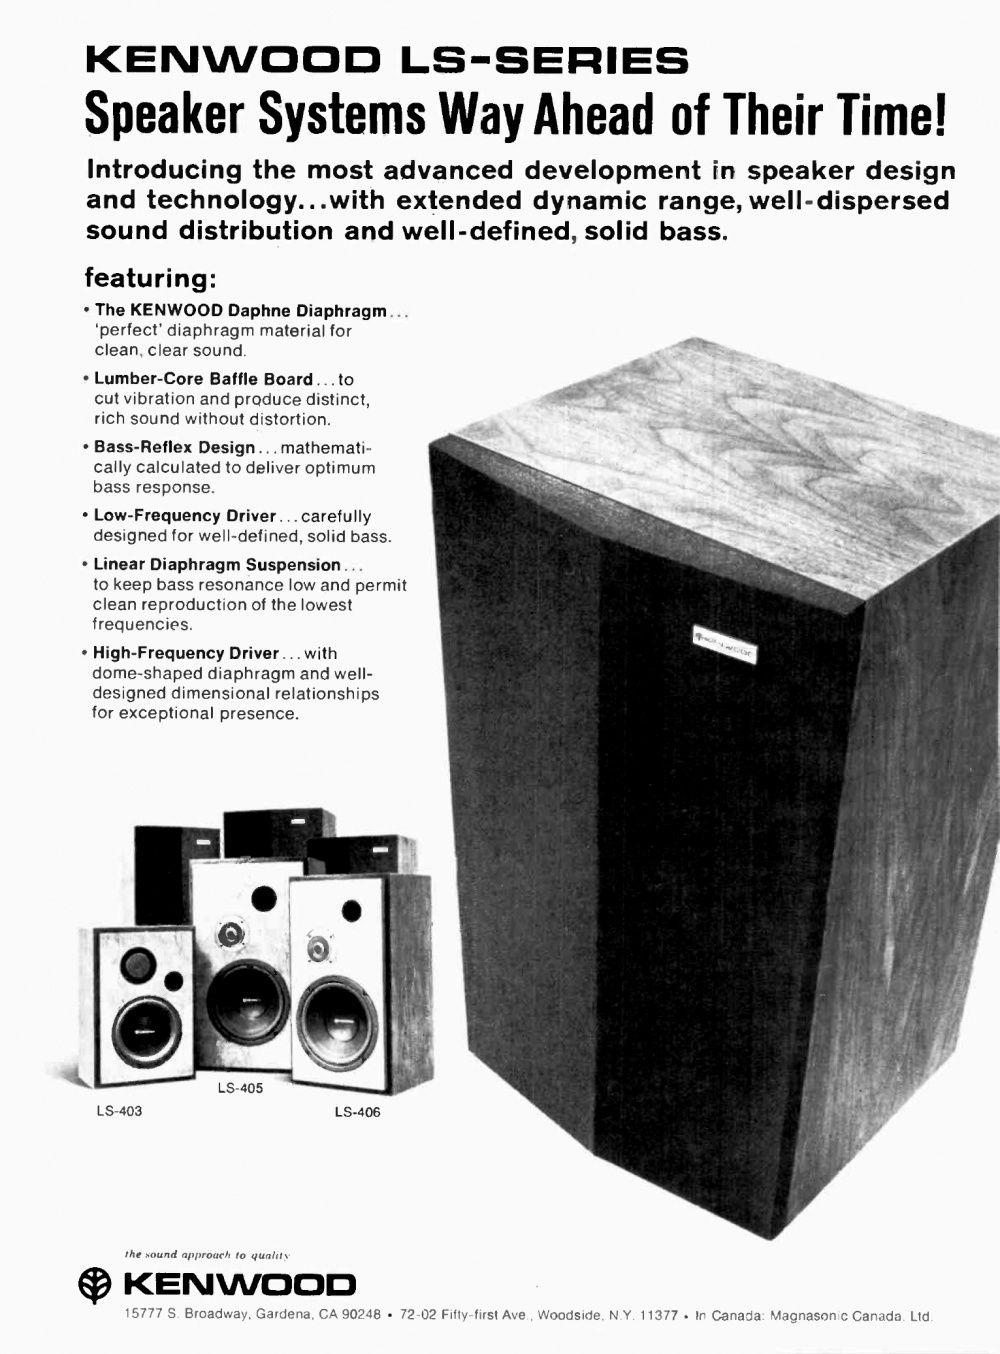 Kenwood LS-403-405-406-Werbung-1976.jpg